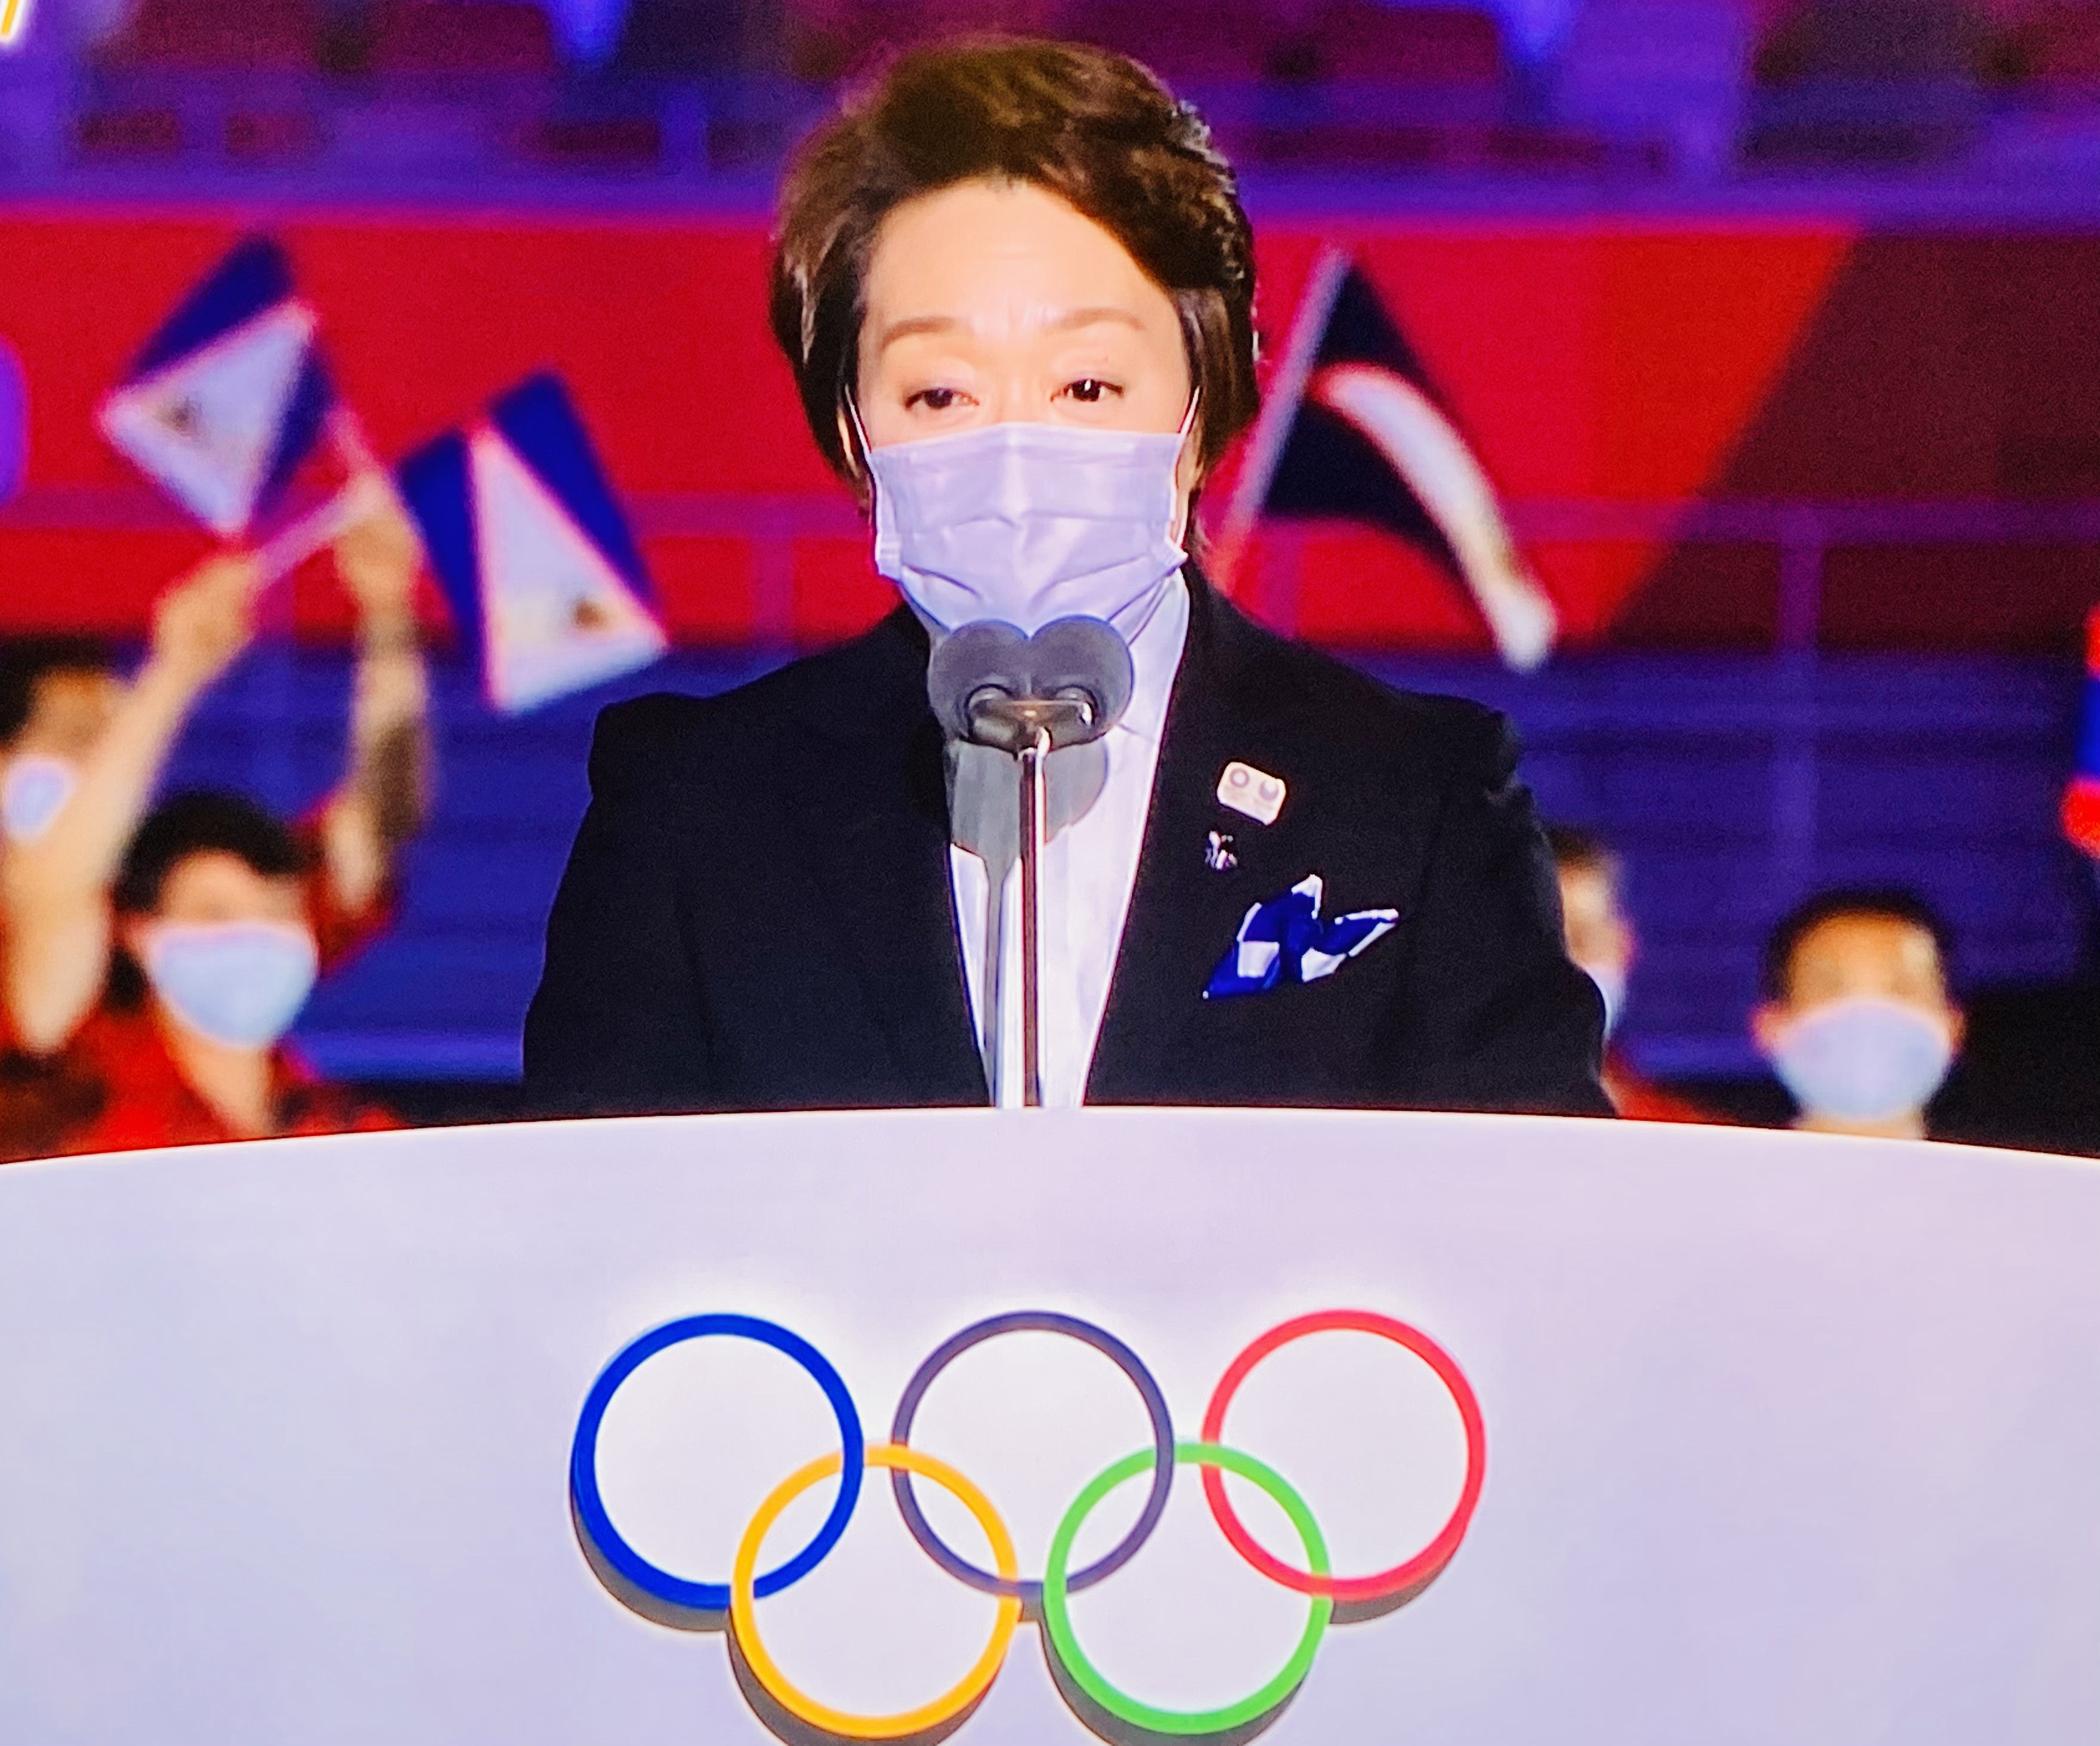 さあ、共に歩みましょう  #東京2020オリンピック